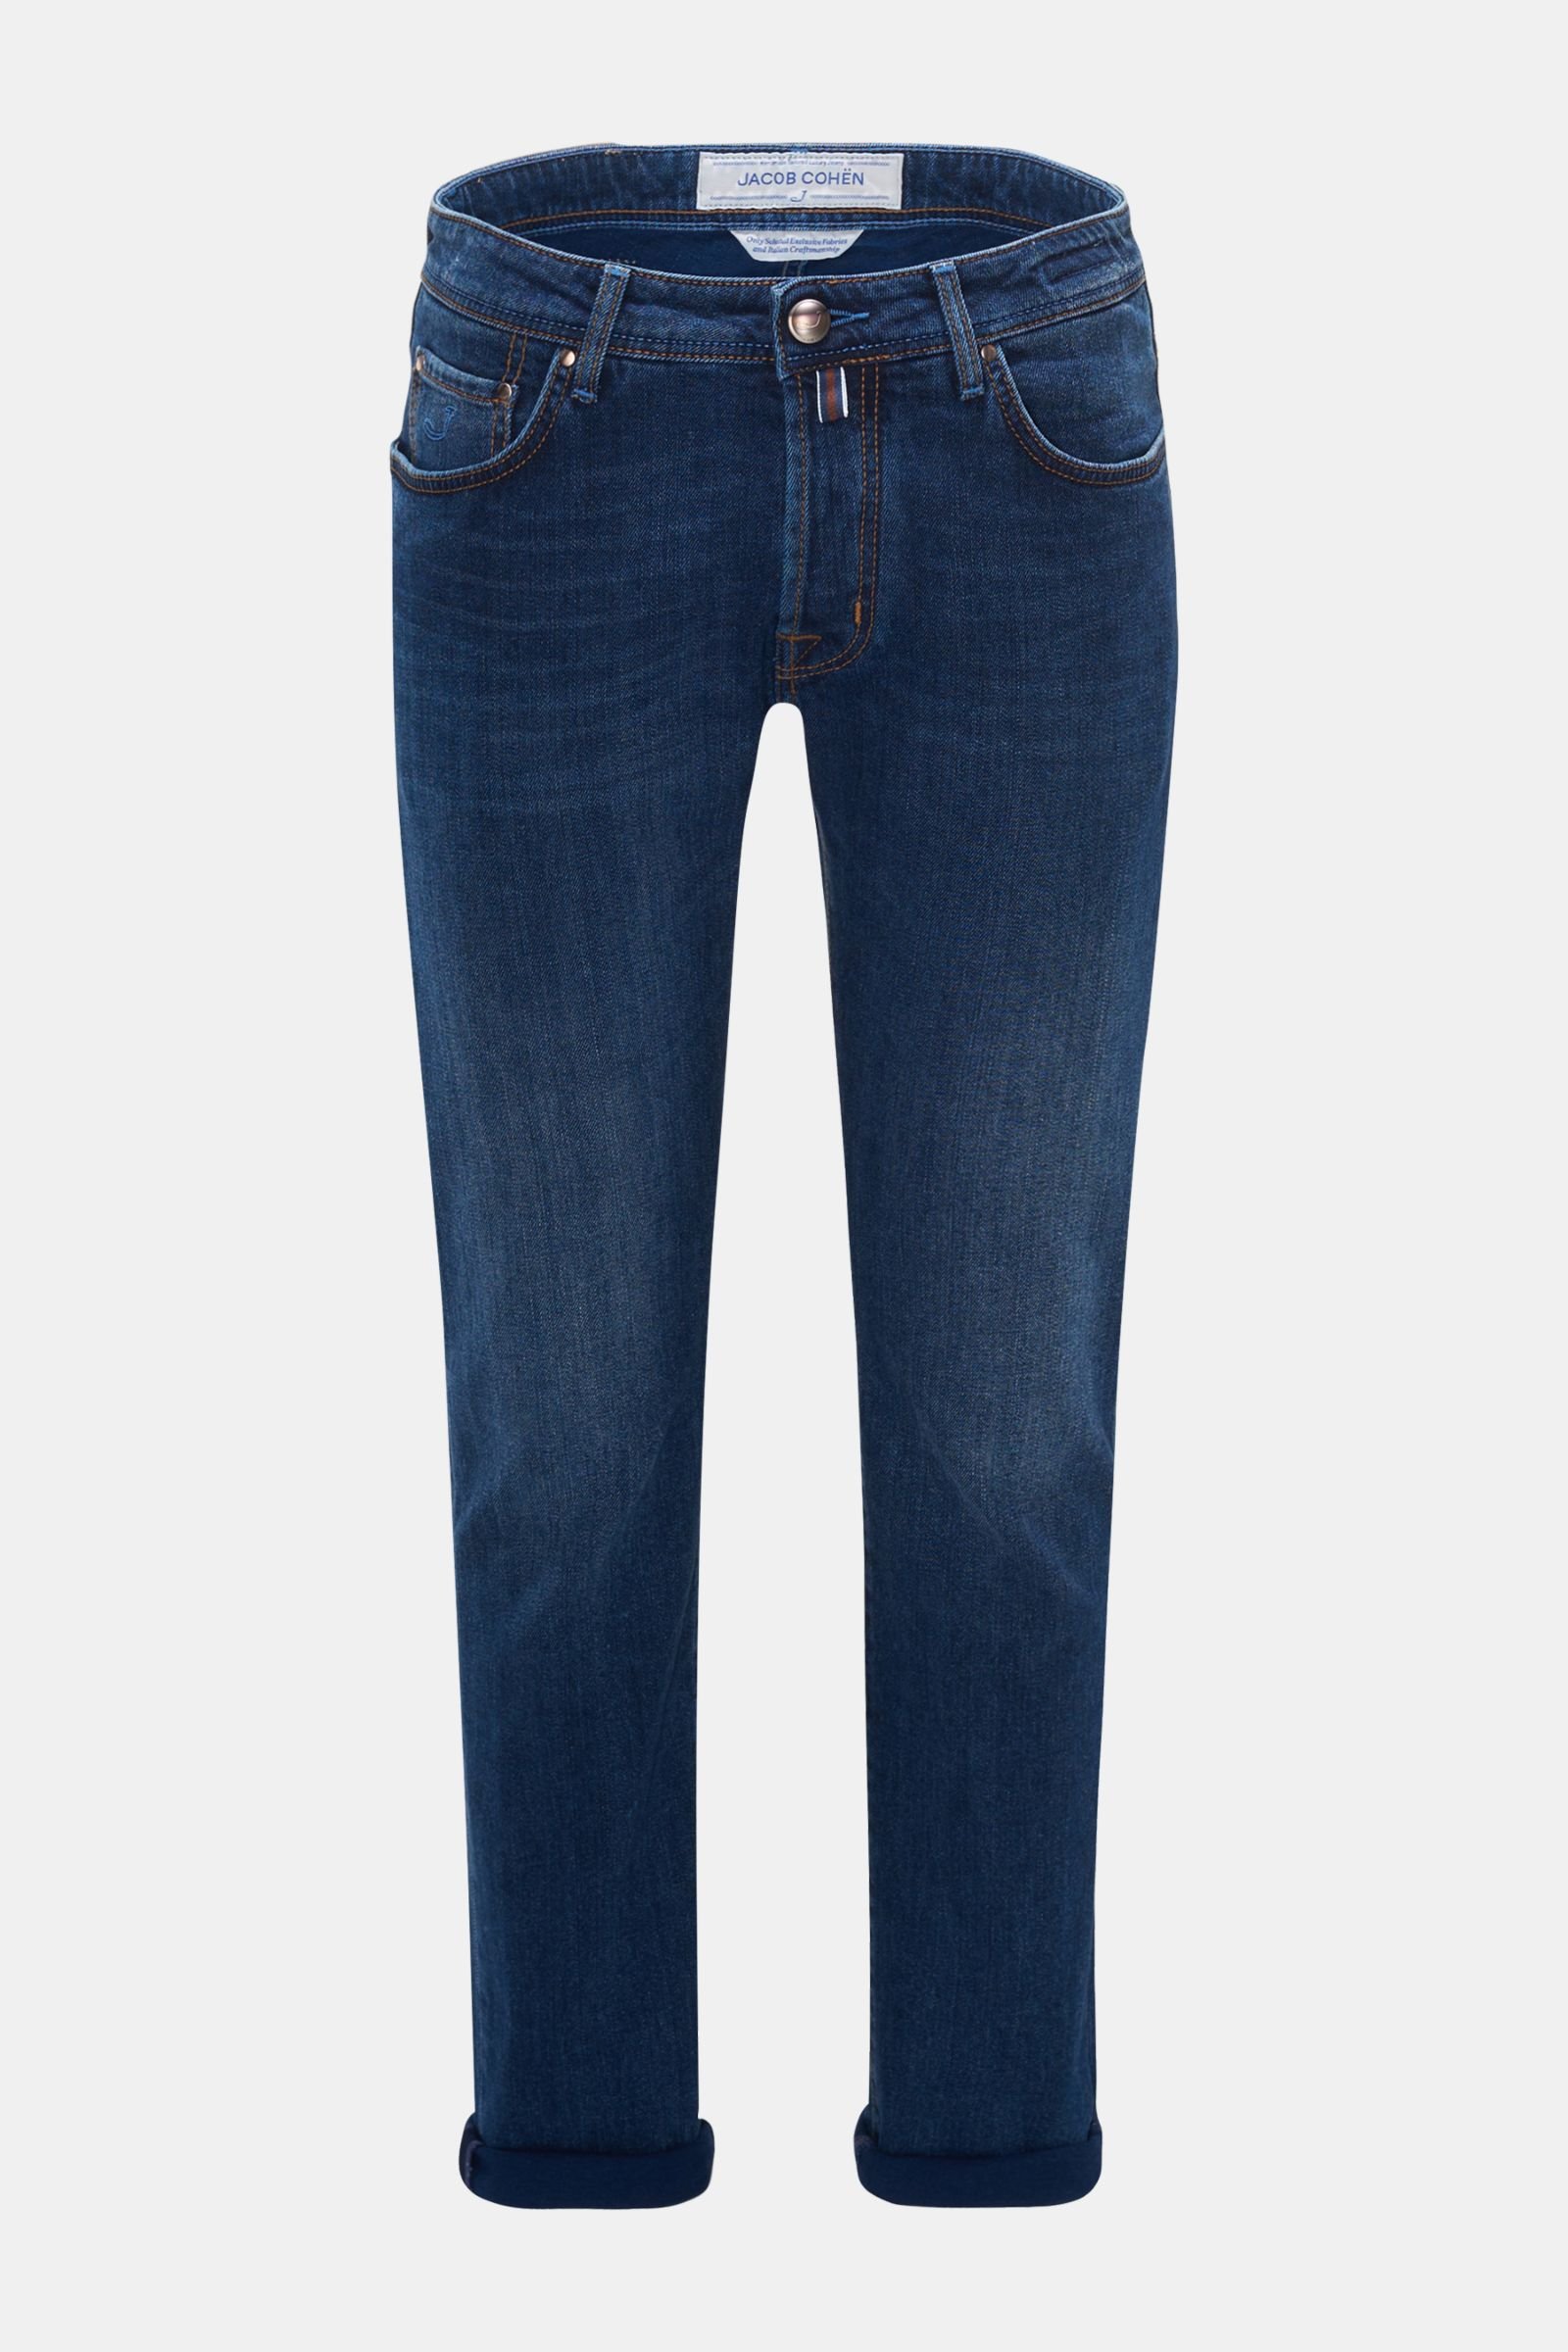 jacob cohen jeans j688 comfort